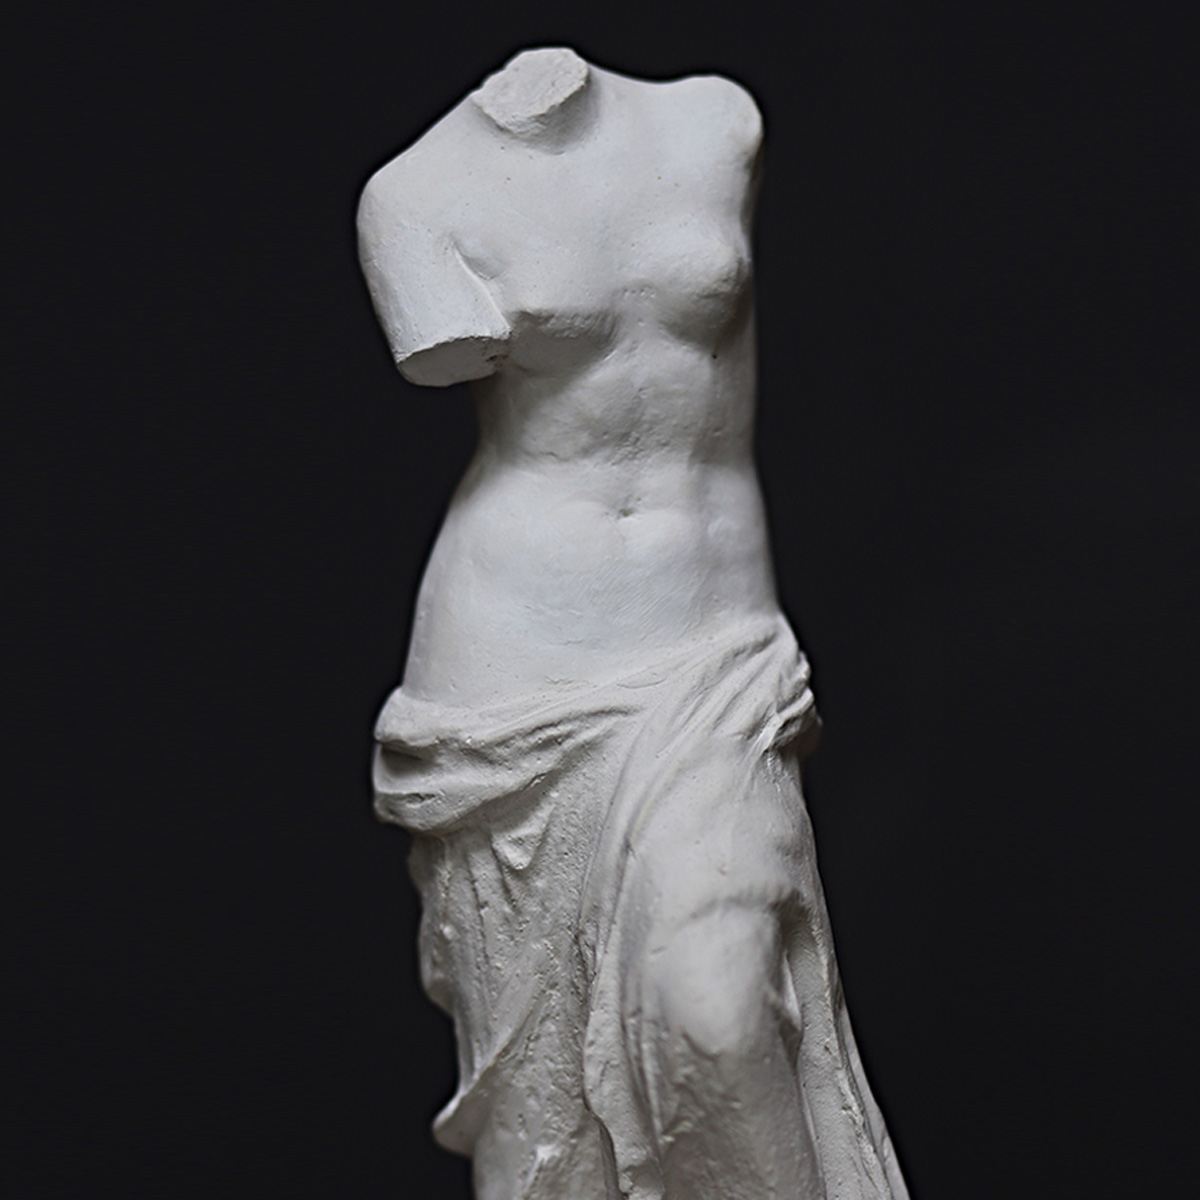 Statua in gesso Venere di Milo by Studio Galleria Romanelli